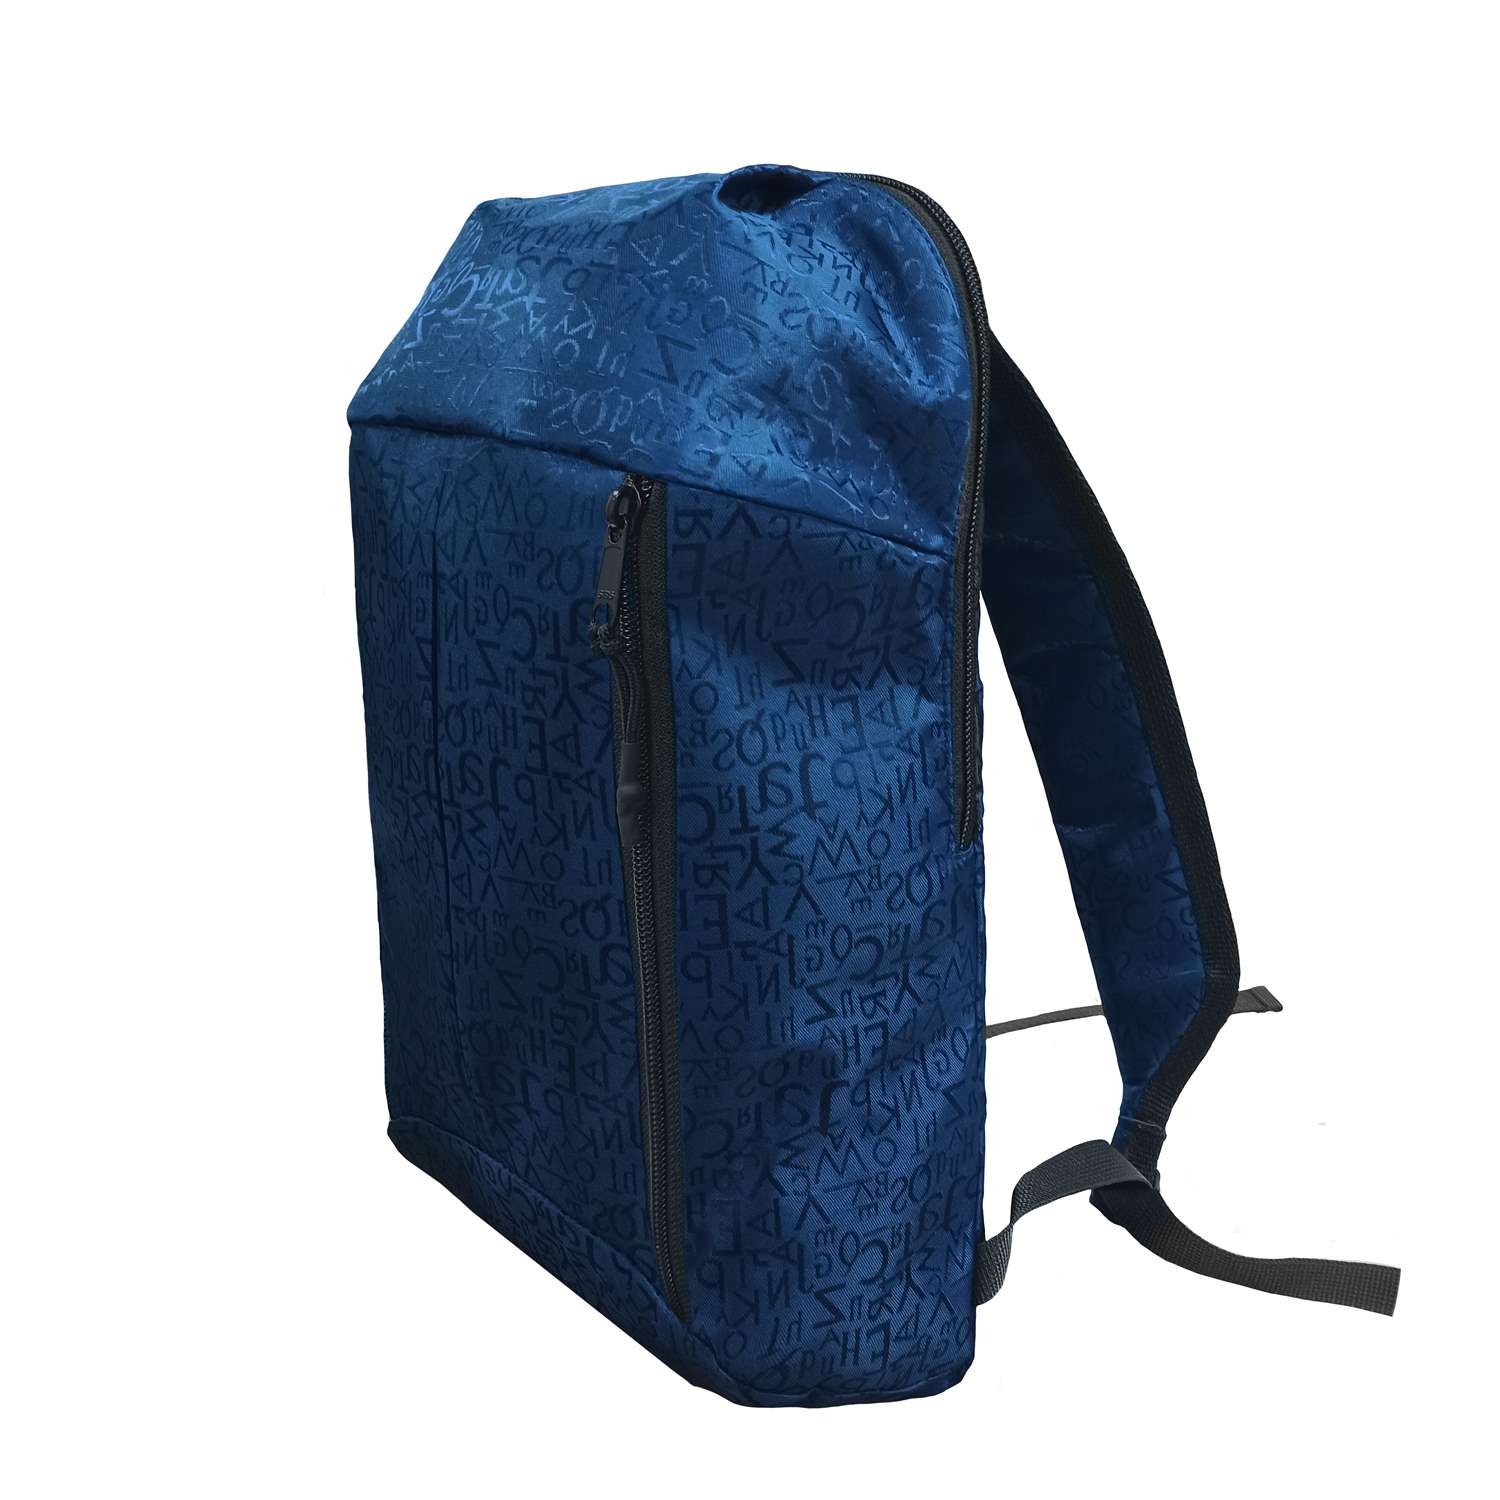 Рюкзак для девочки кожаный CASTRA City Bag Style 10 л - фото 2